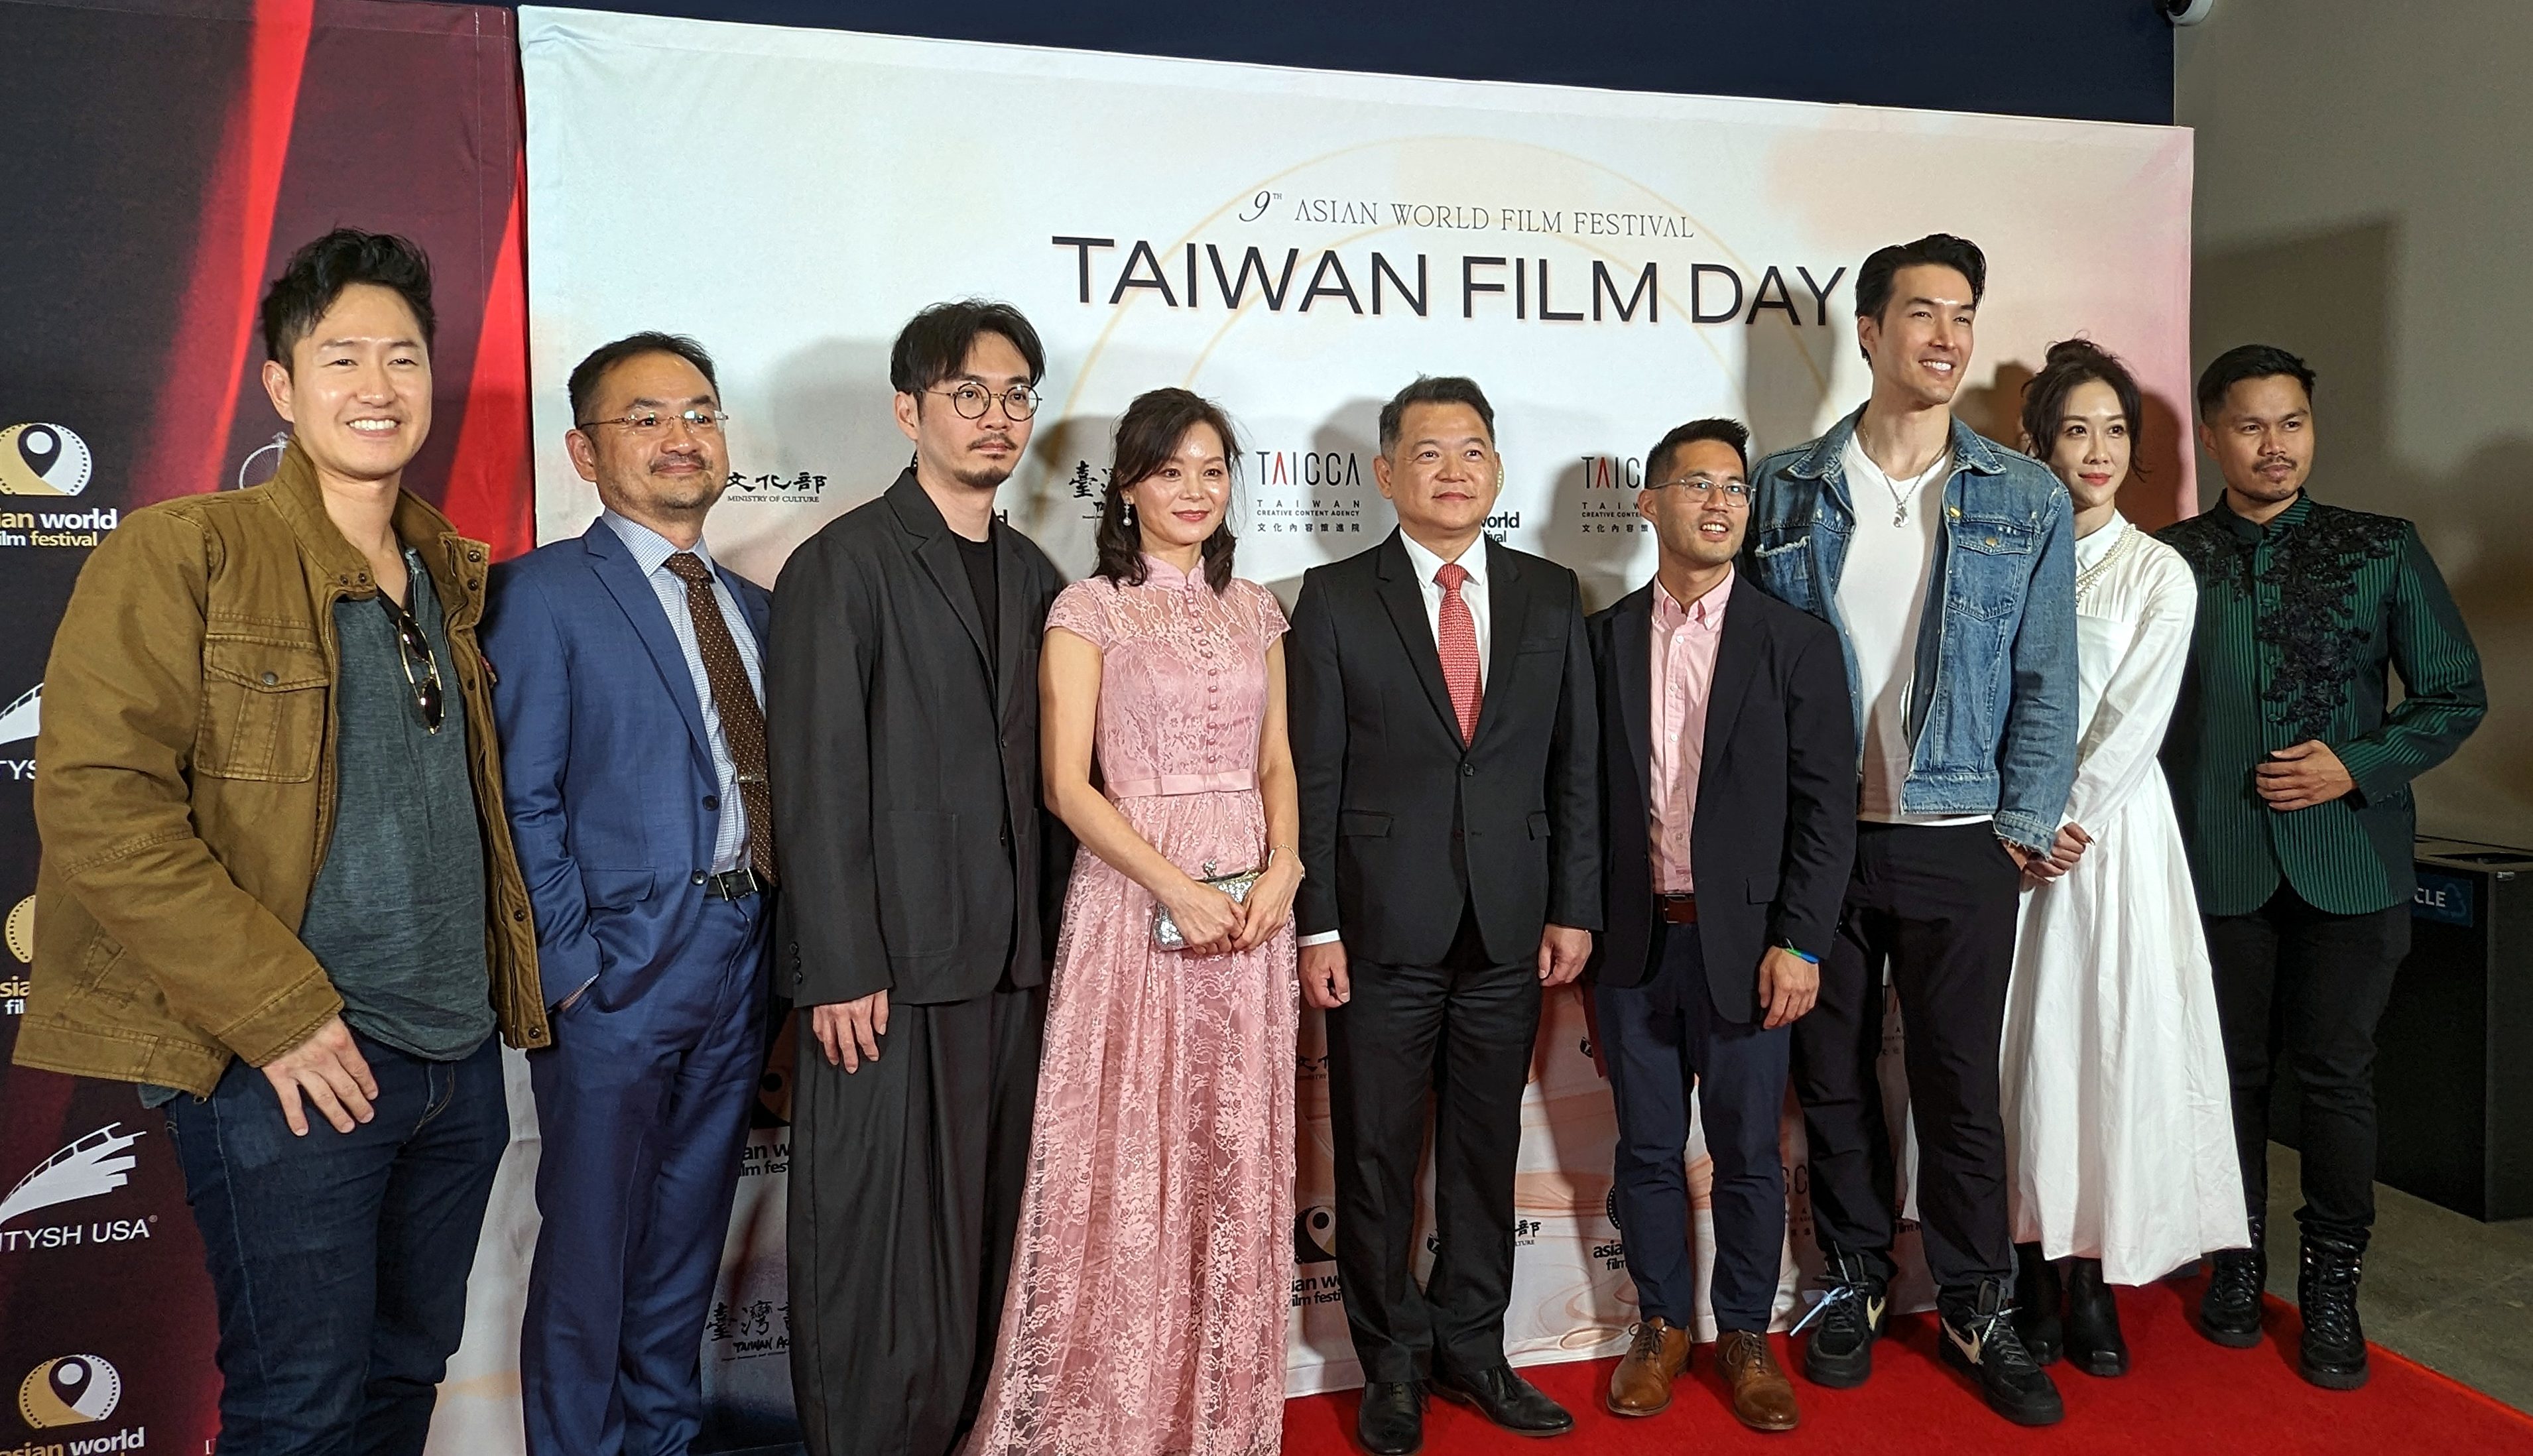 亞洲國際電影節 突顯台灣尊重多元與人權